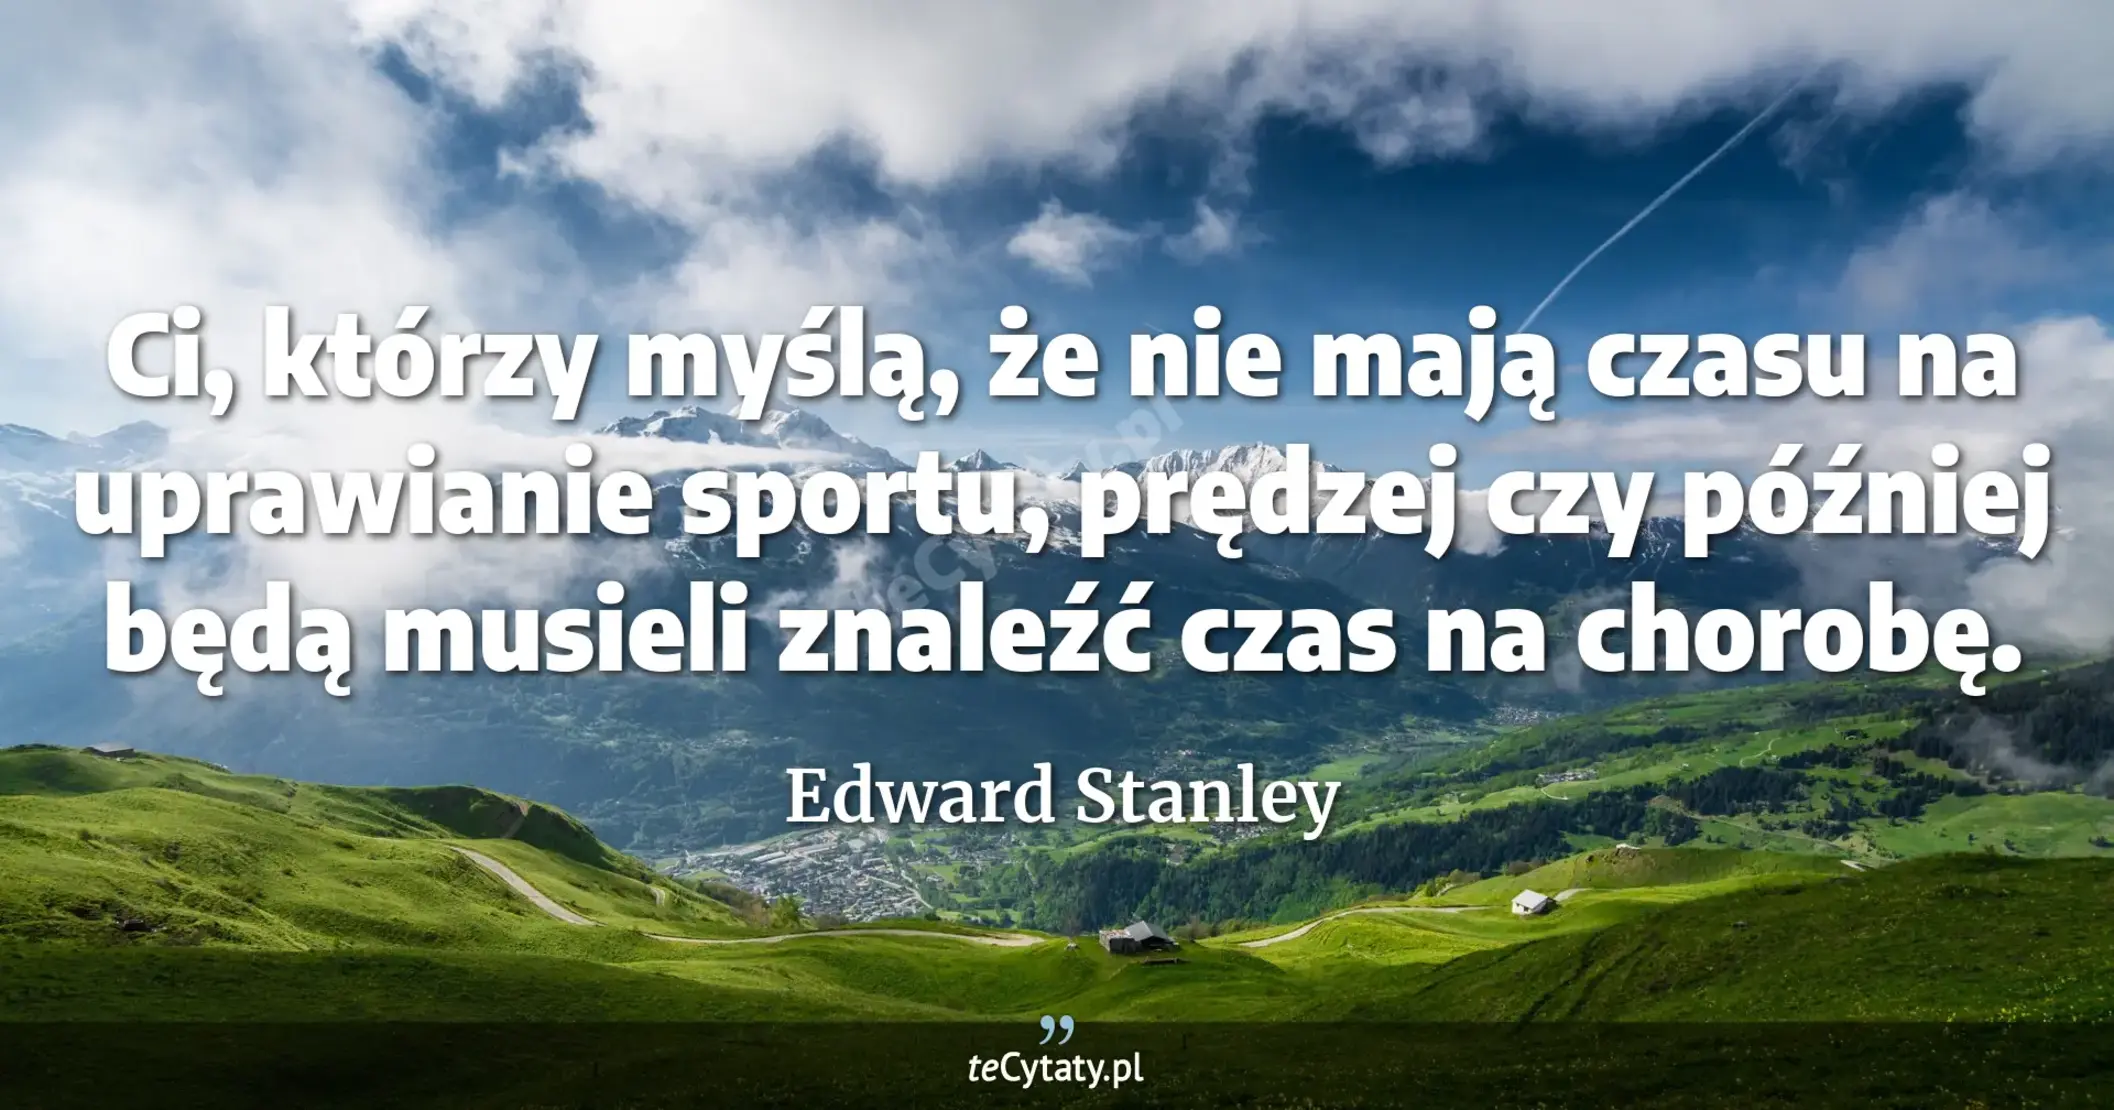 Ci, którzy myślą, że nie mają czasu na uprawianie sportu, prędzej czy później będą musieli znaleźć czas na chorobę. - Edward Stanley